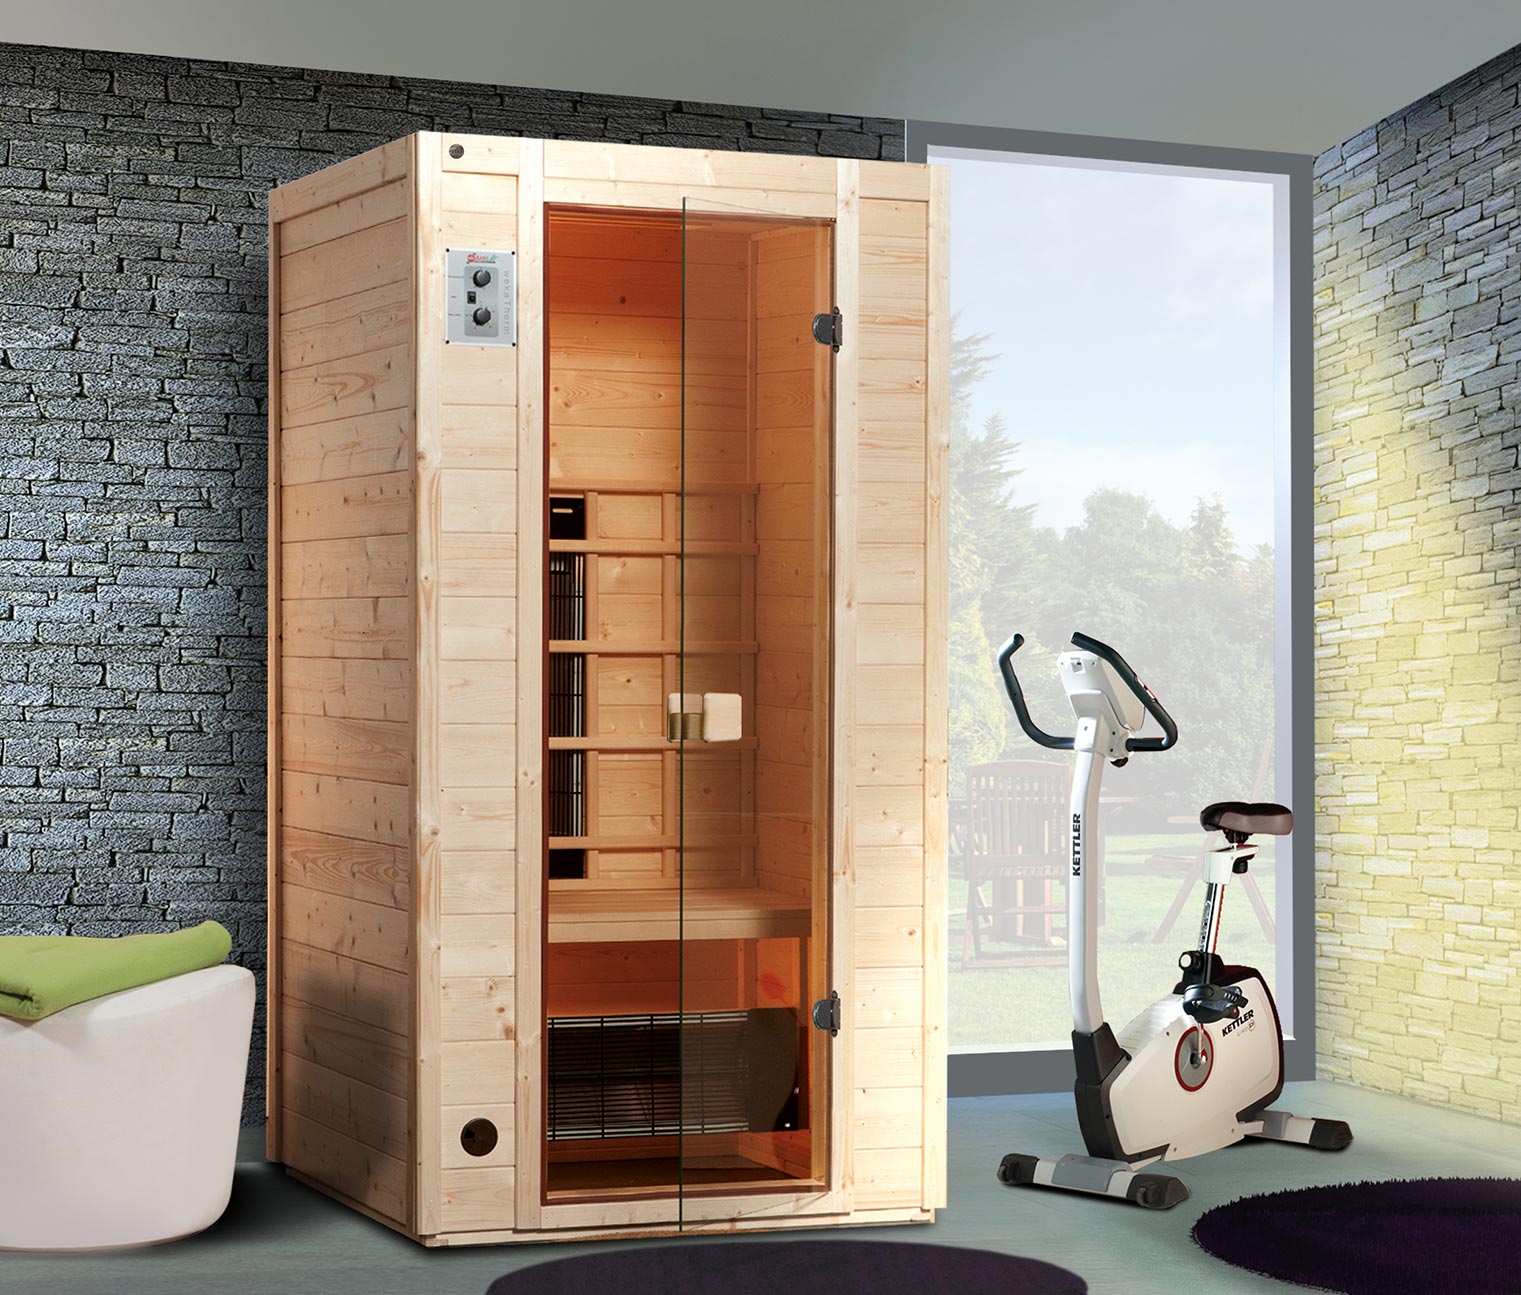 CHICIRIS Sauna-Zubehör Sauna-Uhr Heizung Große arabische Ziffern Premium-Holz-Sauna-Fitnessräume für das Wohnzimmer zu Hause 